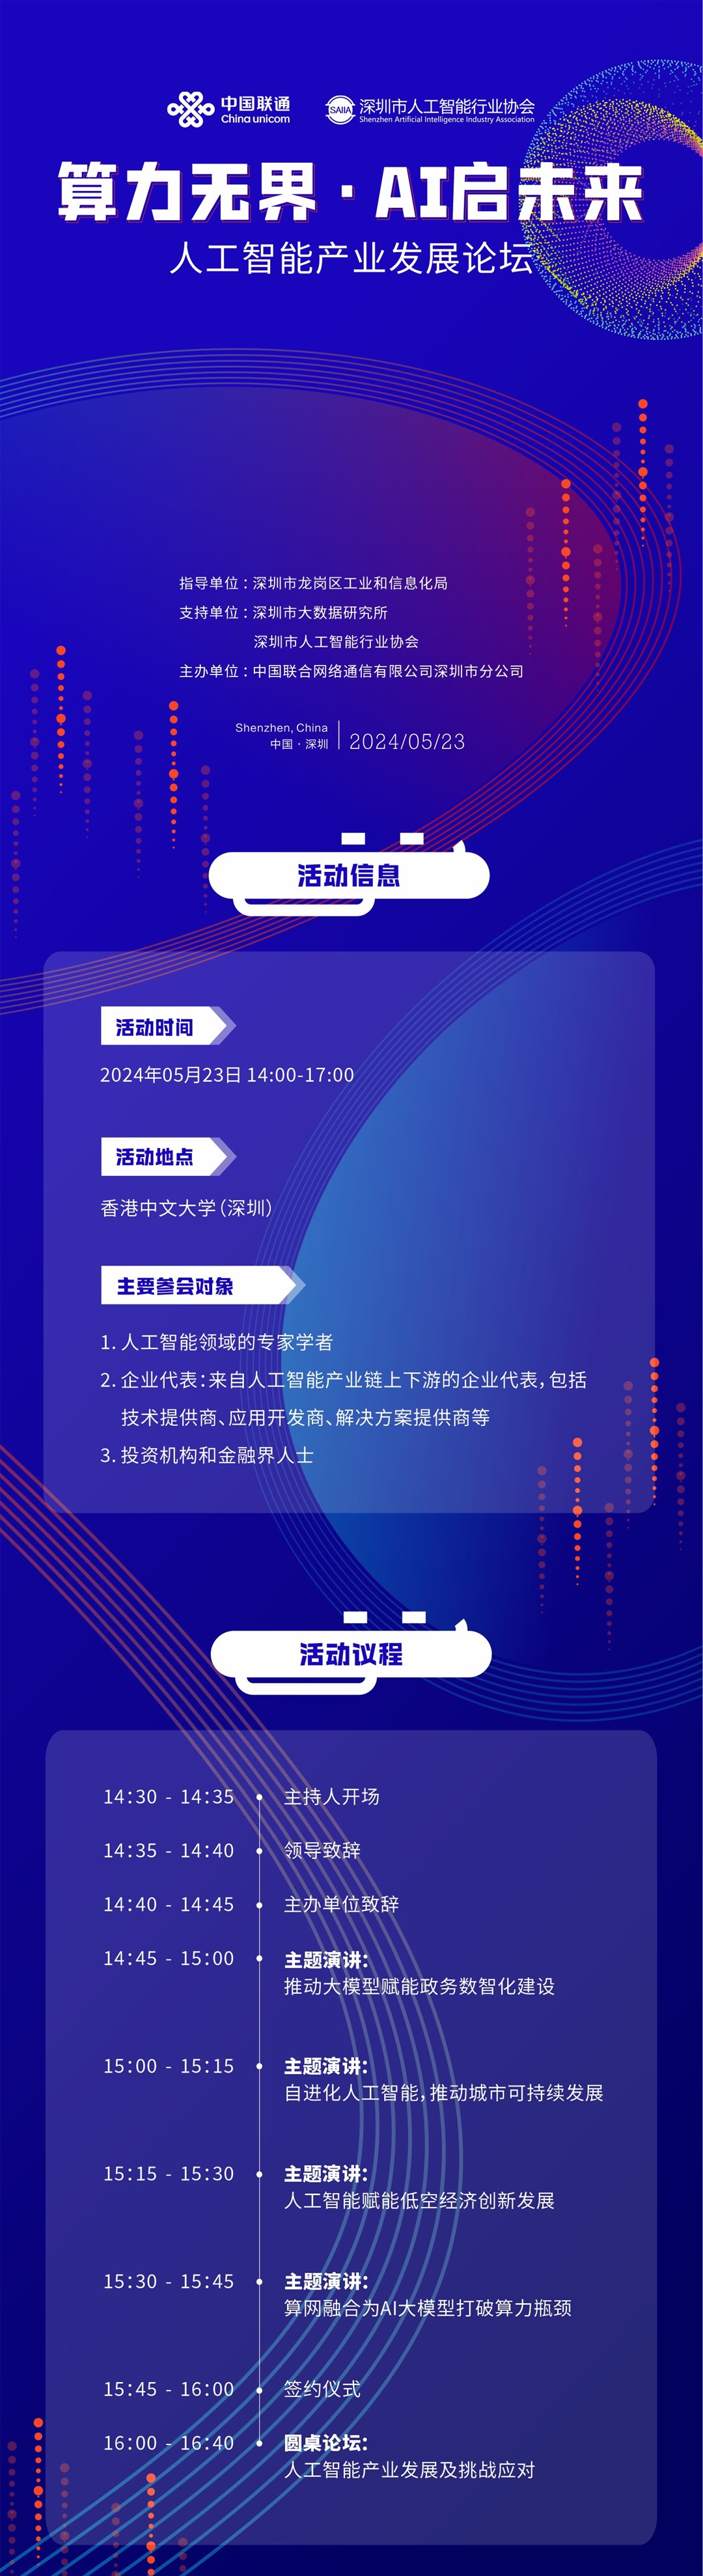 算力无界·AI启未来 5.29活动长海报(1).png